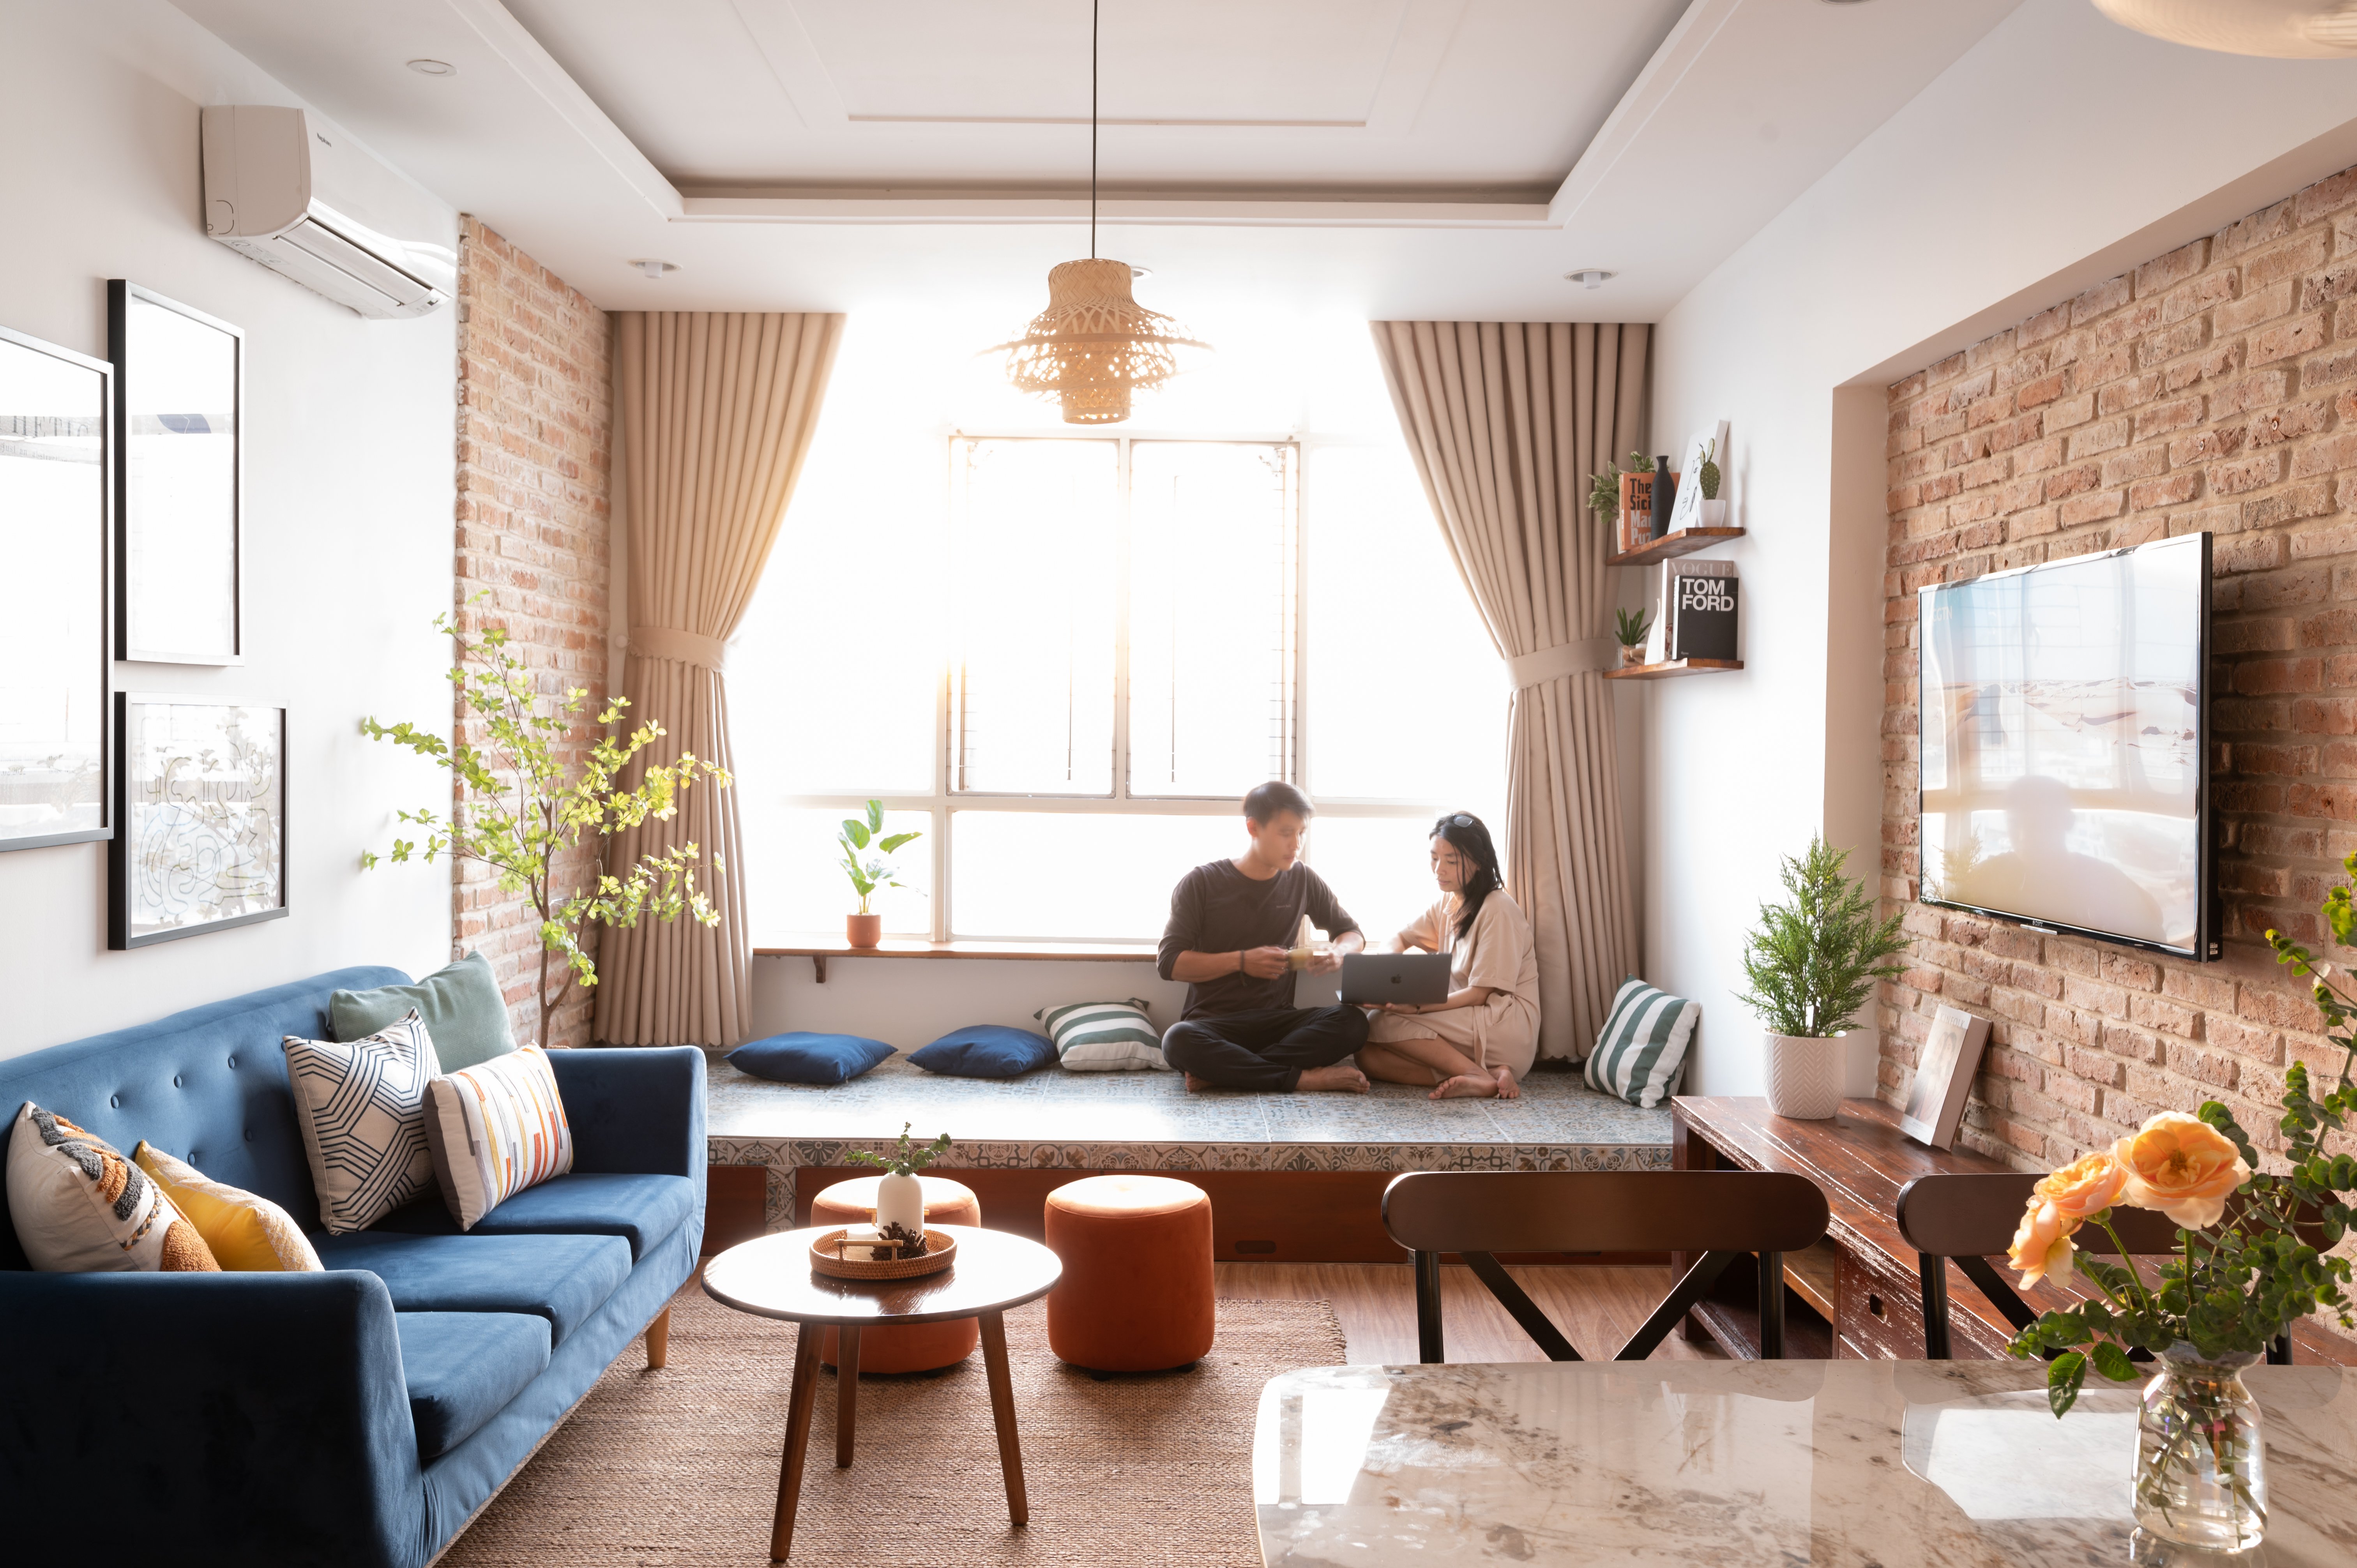 [3/2022] Dự án cải tạo căn hộ cho thuê du lịch tại Quy Nhơn - Before & After 25